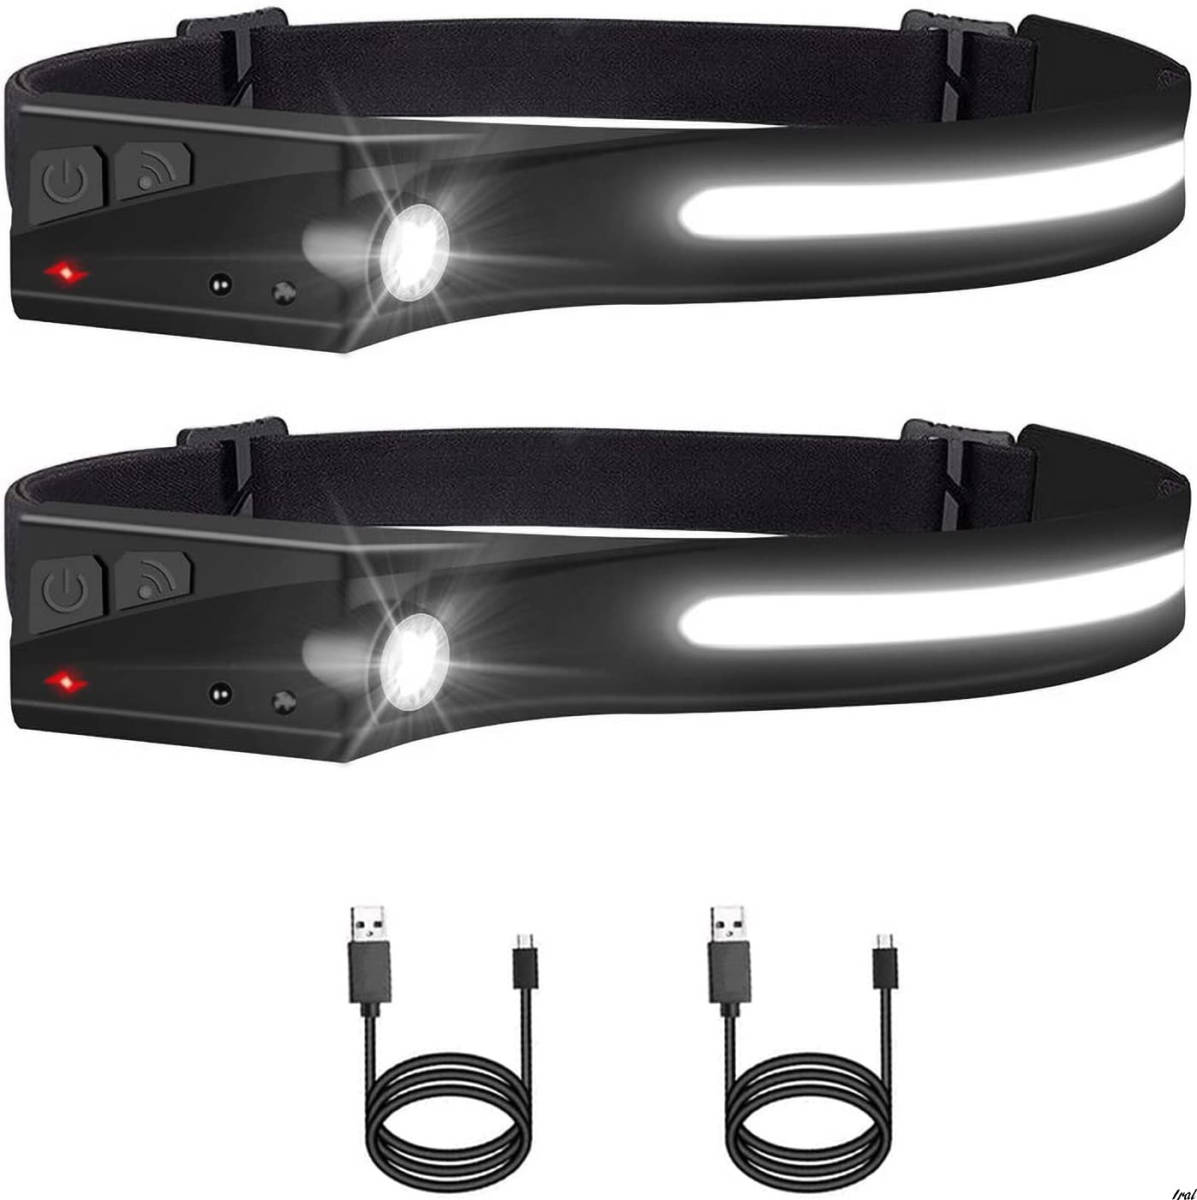 最高の品質の ヘッドライト 防災 停電 キャンプ アウトドア 釣り 作業 キャンプ 登山 防塵 IPX4防水 充電式 USB ヘッドランプ LED  高輝度 ヘッドランプ